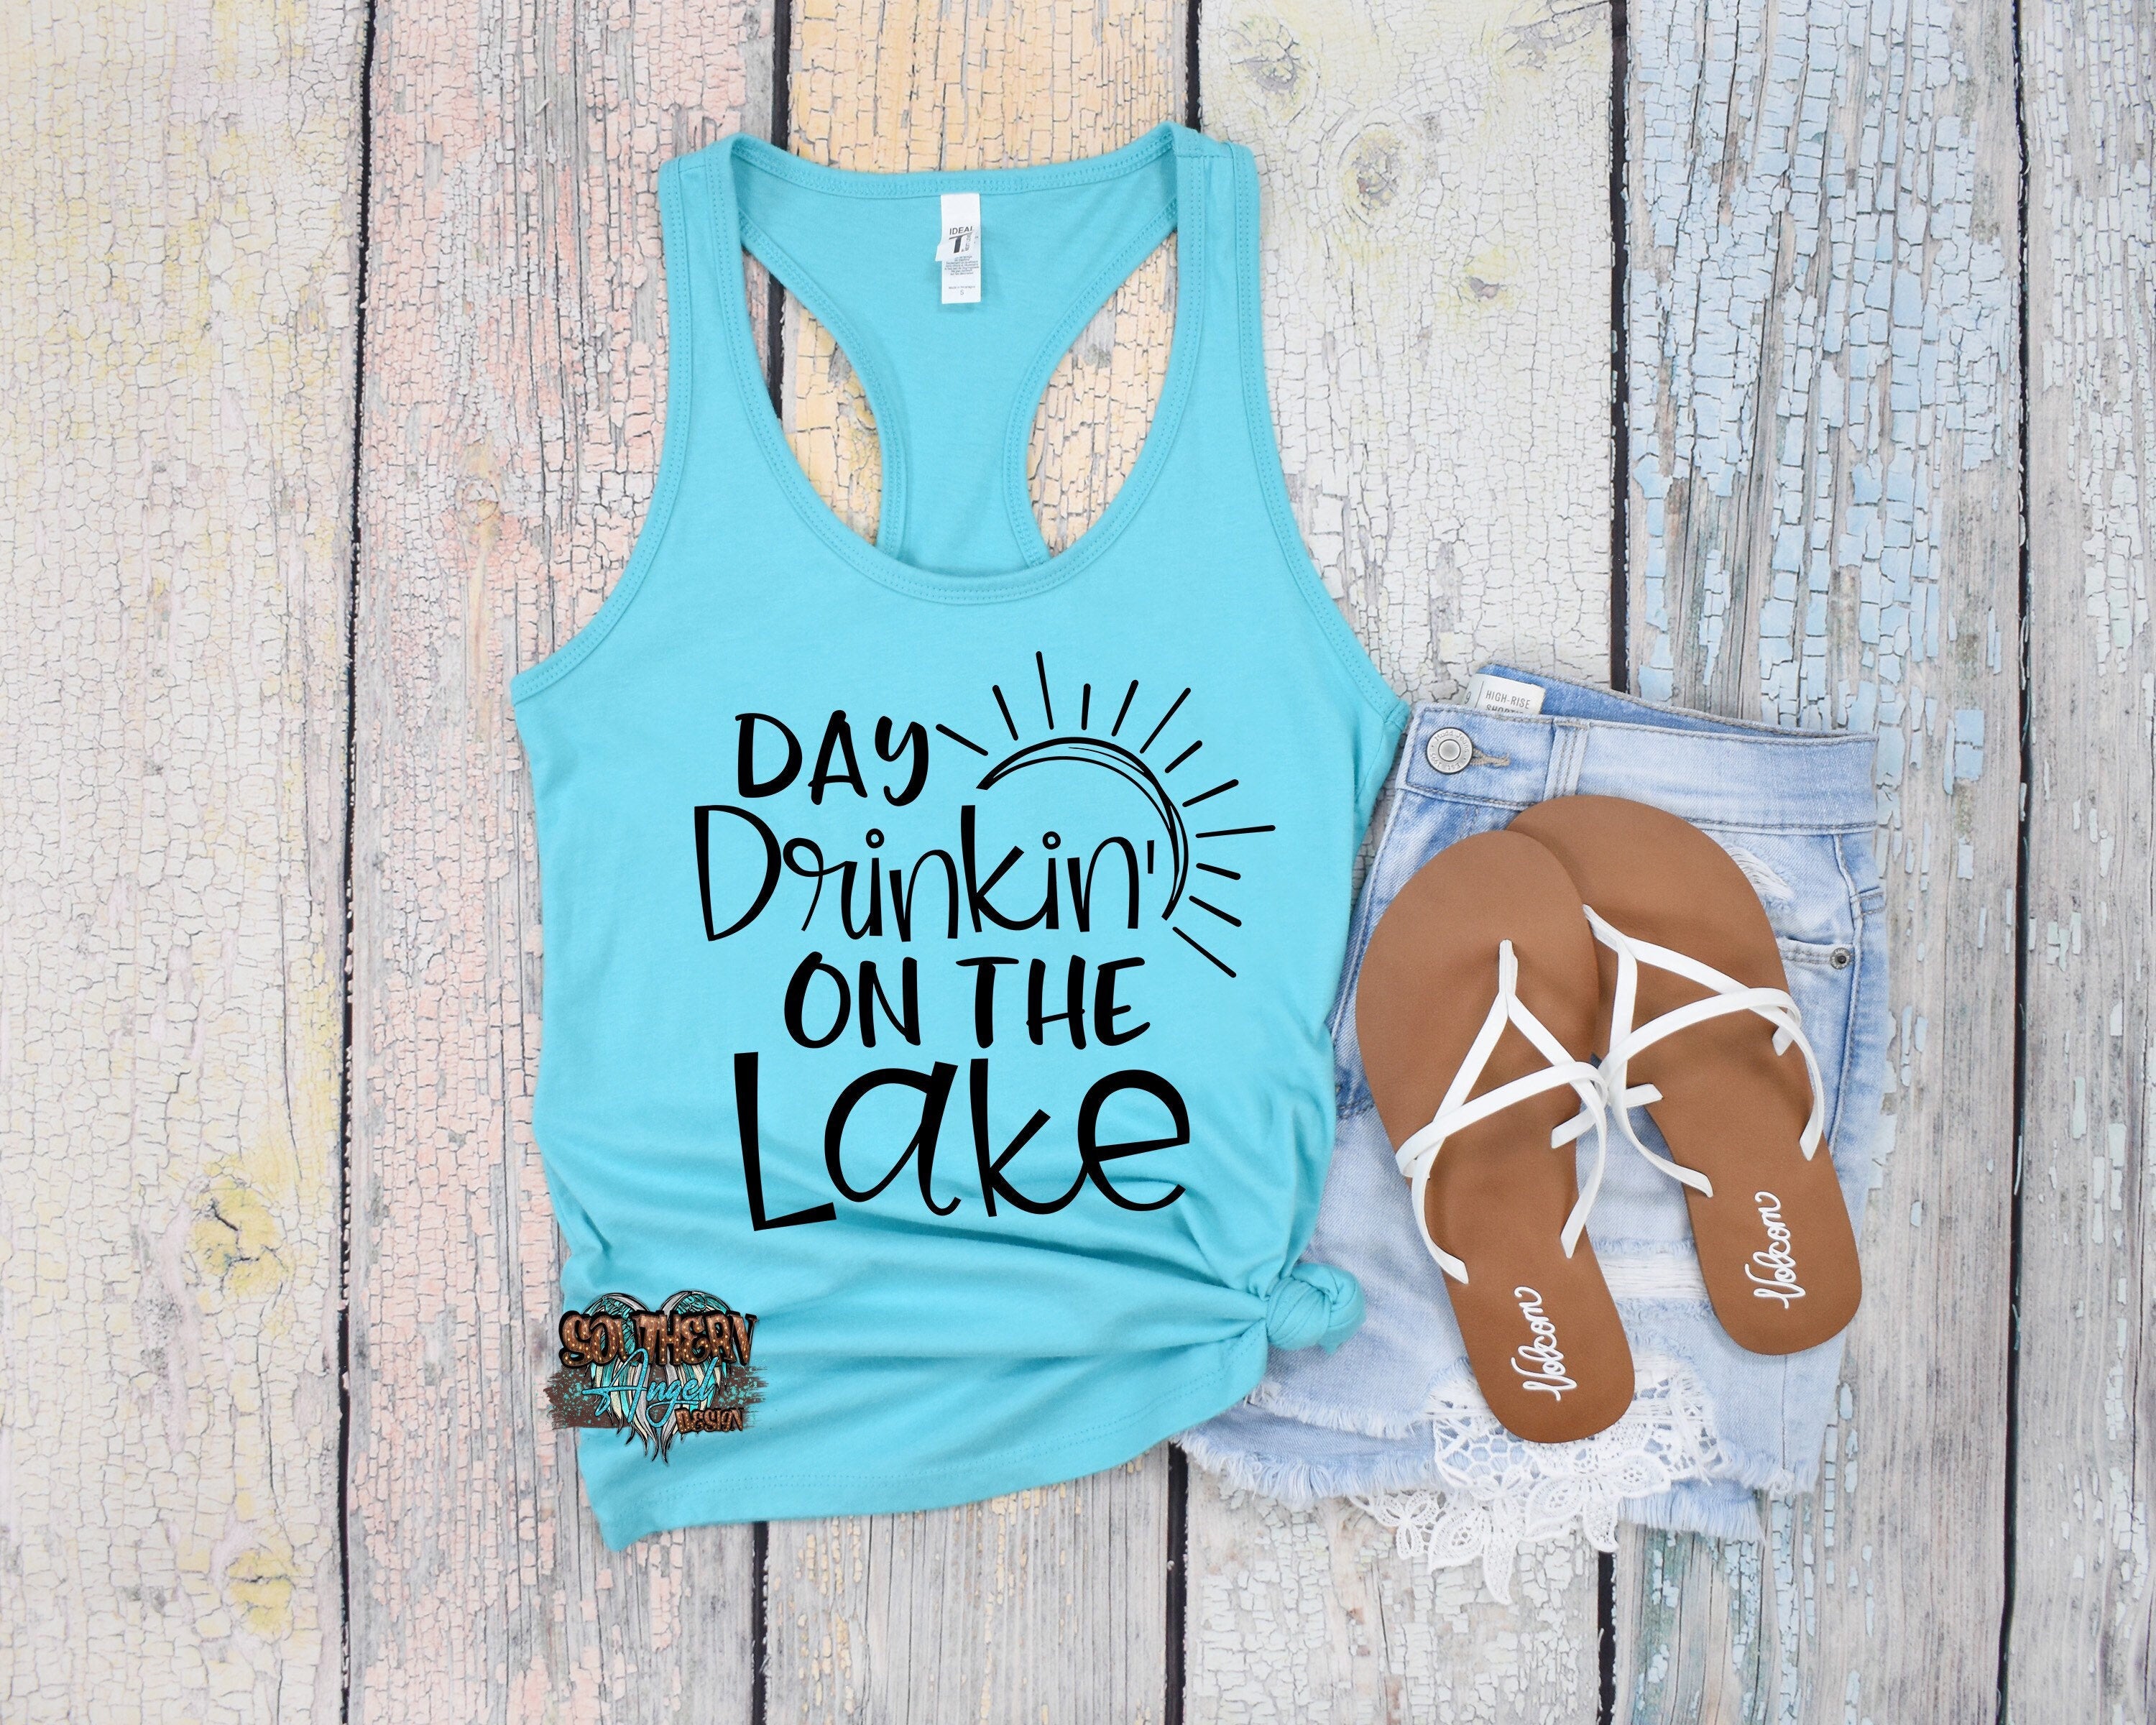 Women's lake tank | Day drinkin’ on the lake tank | Drinking shirt | Summer tank | Fishing tank | Camping shirt